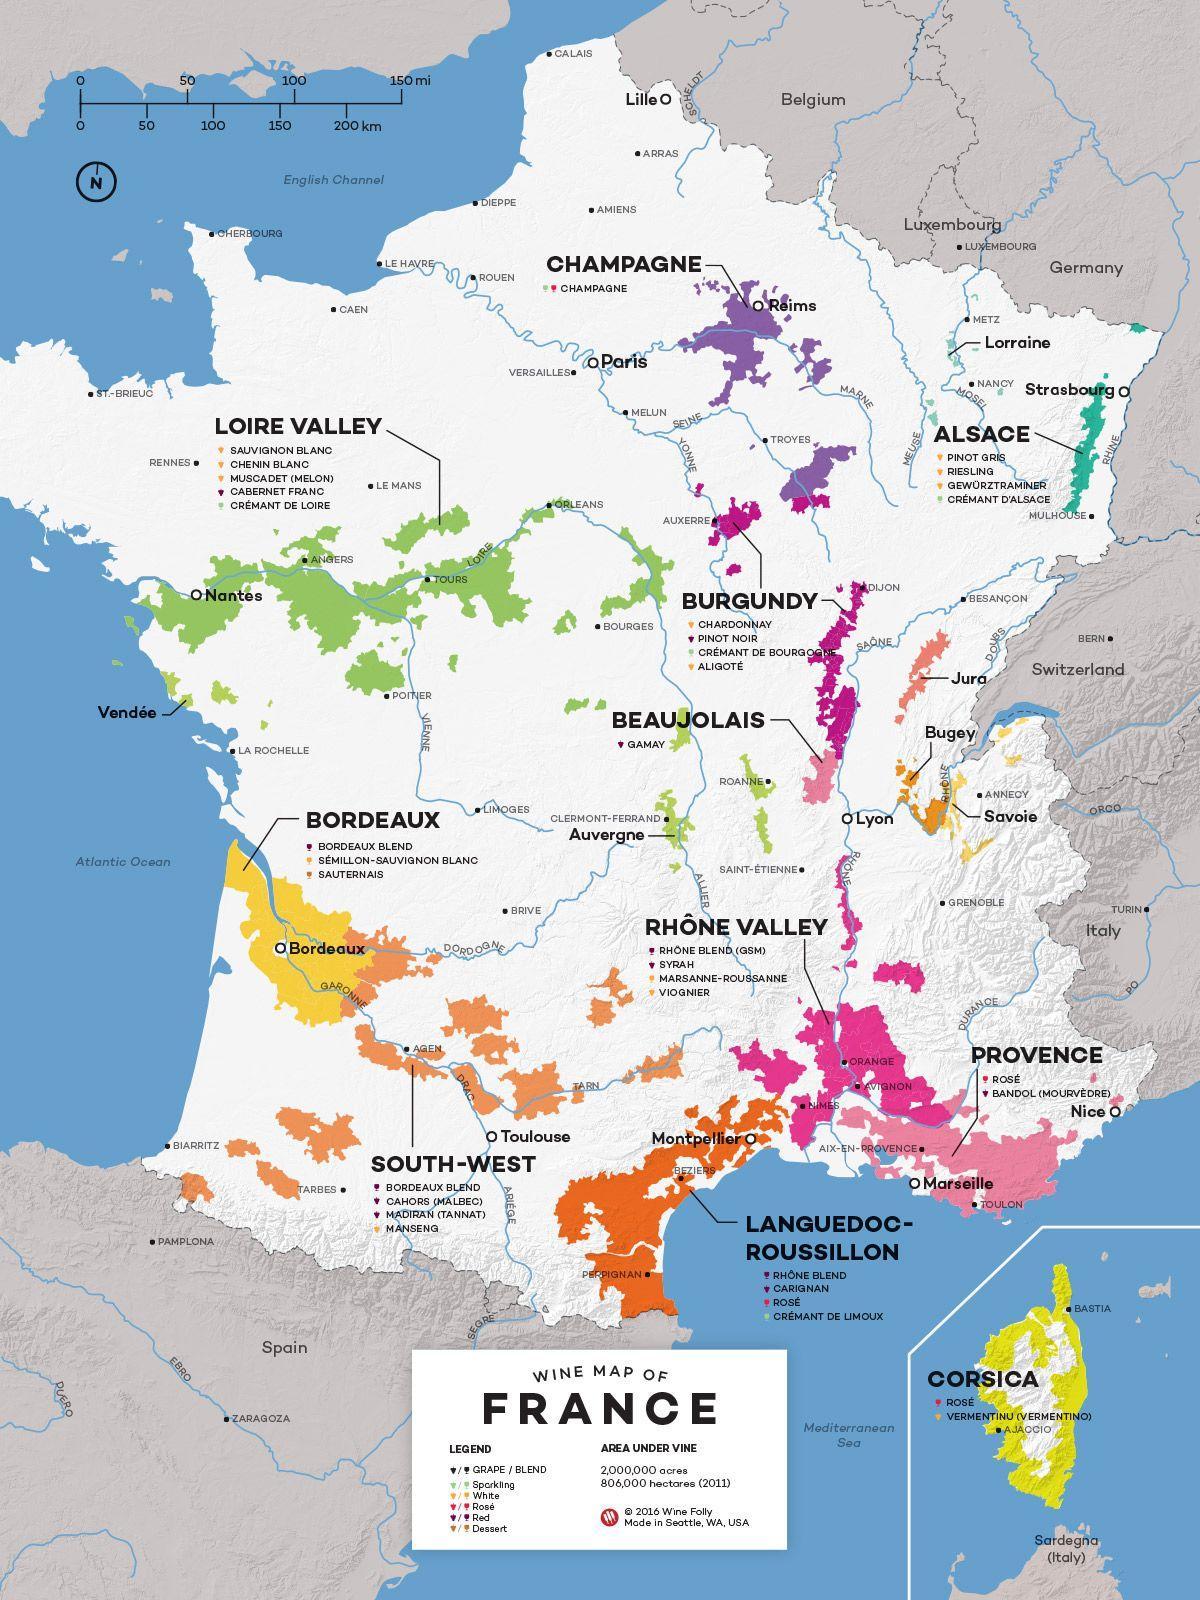 Francia, el país del vino mapa